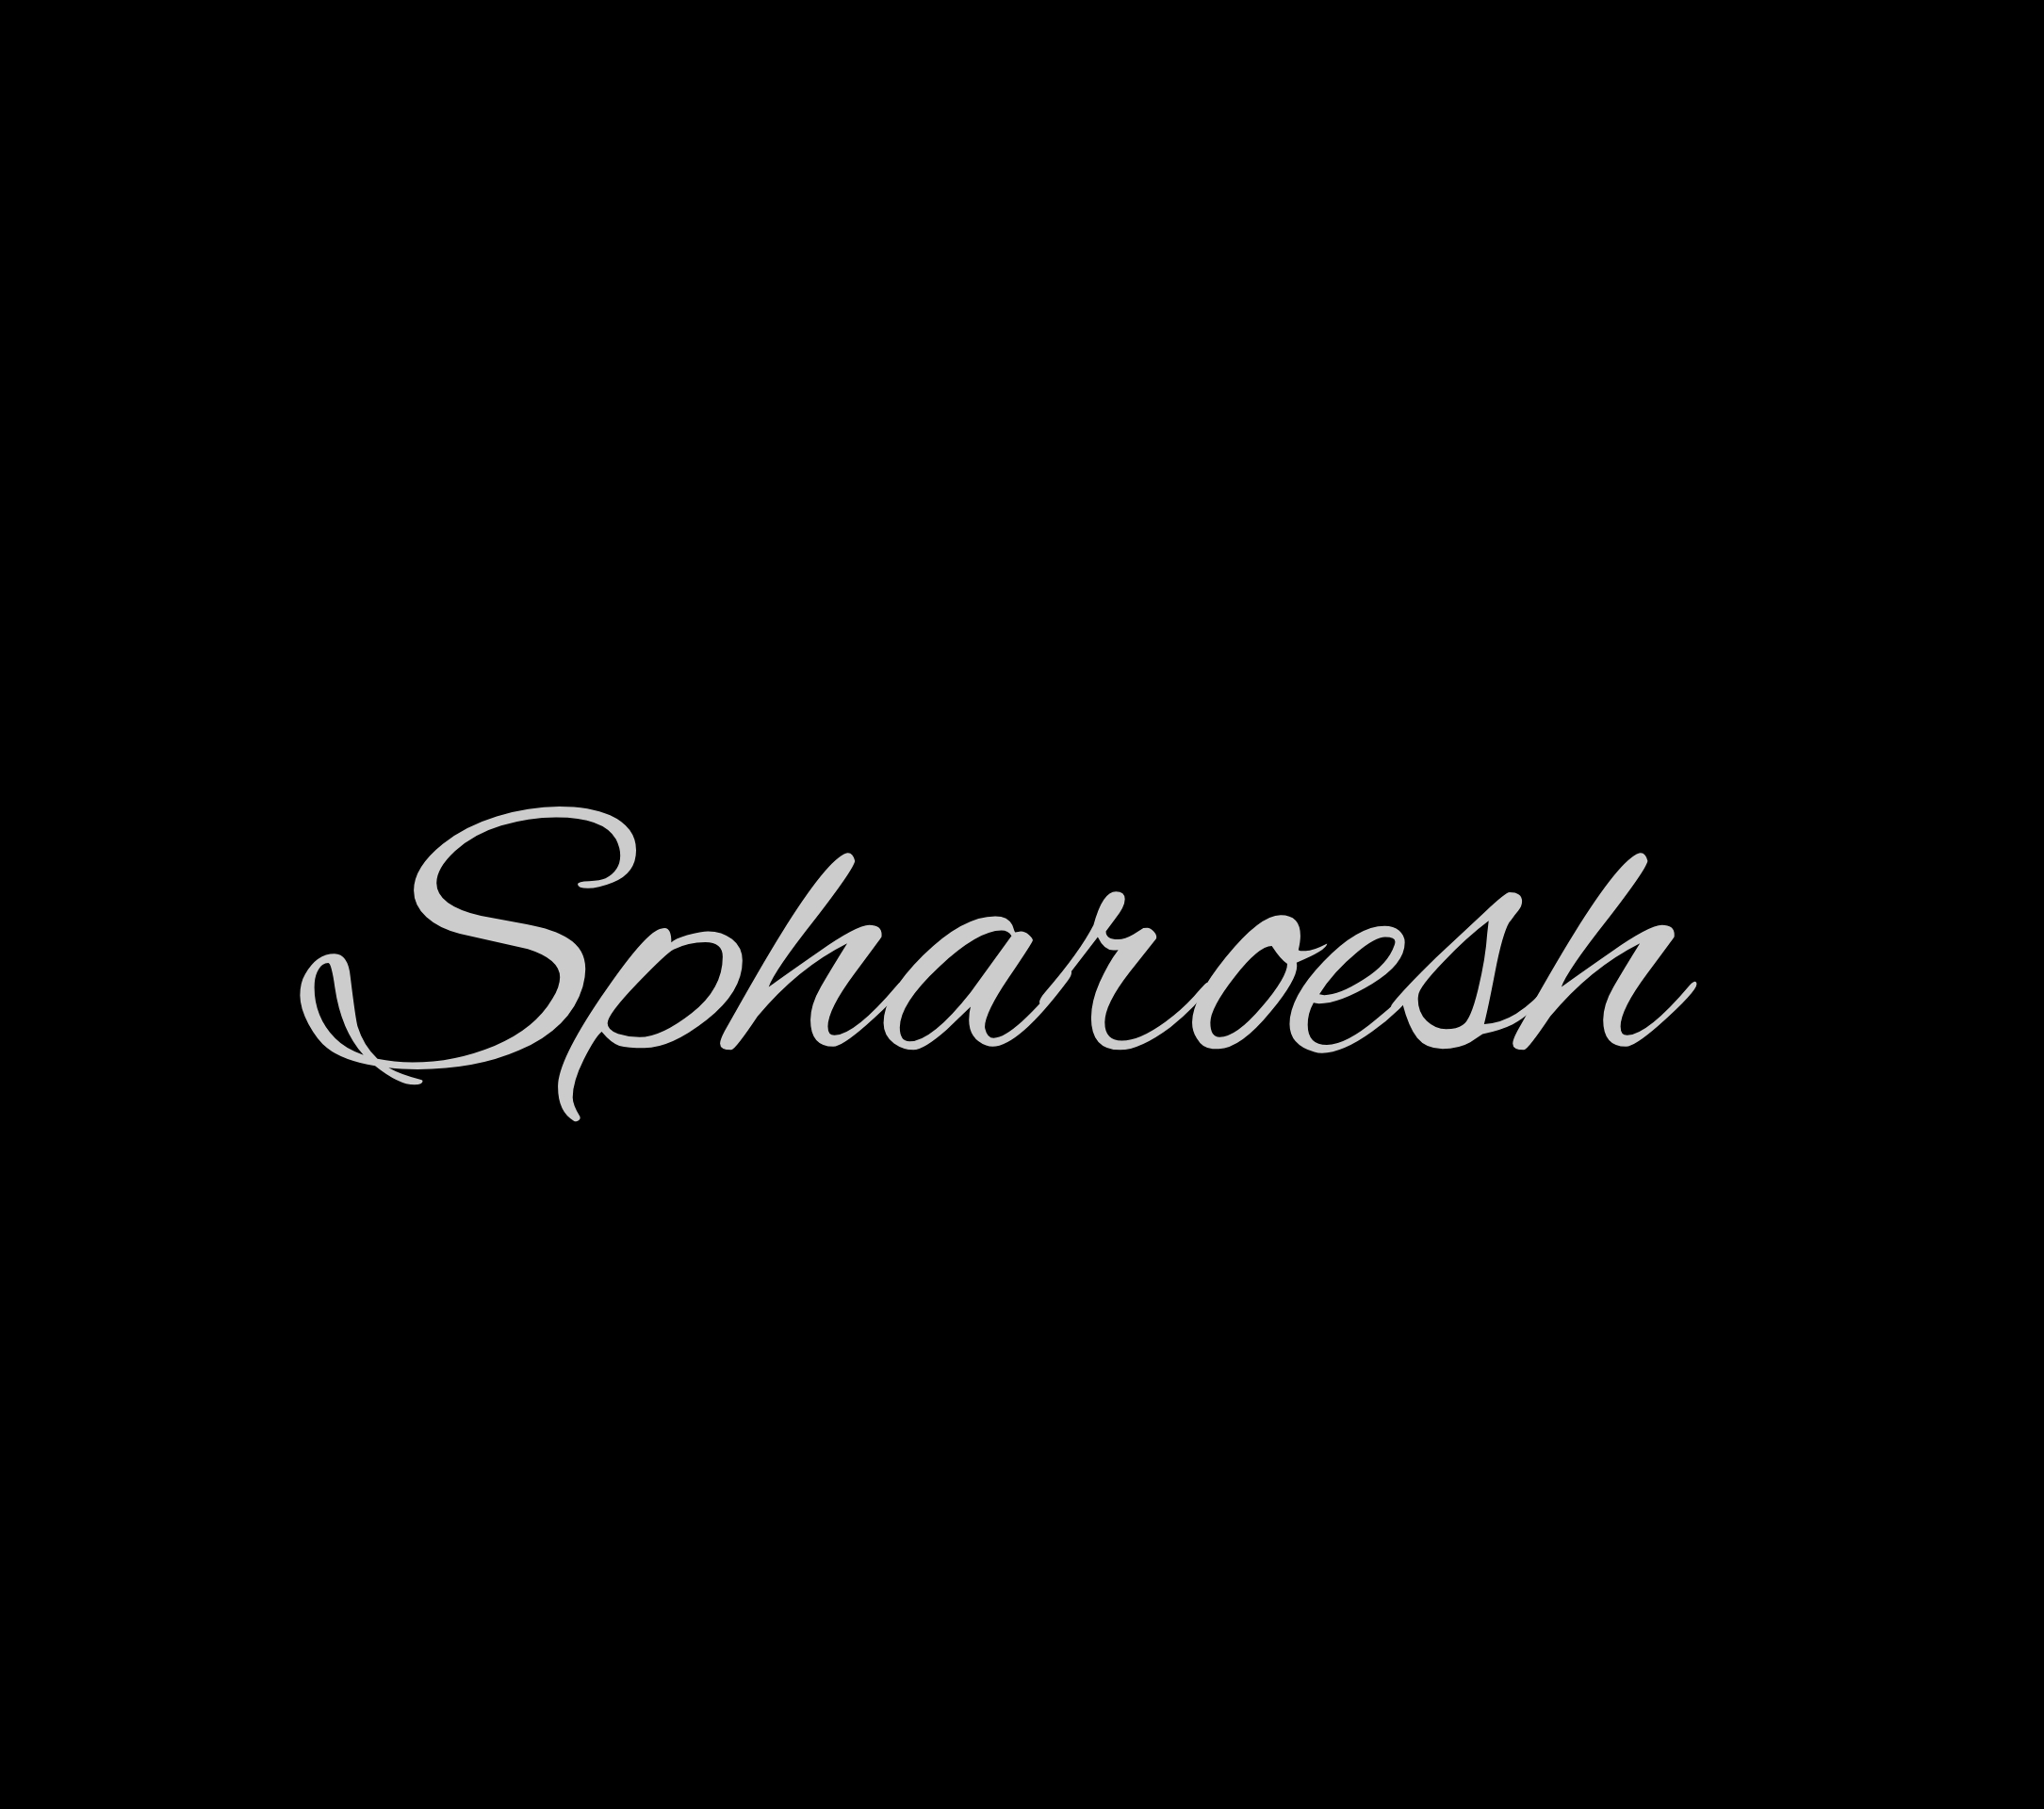 Izenzo (Remake) - Spharoesh